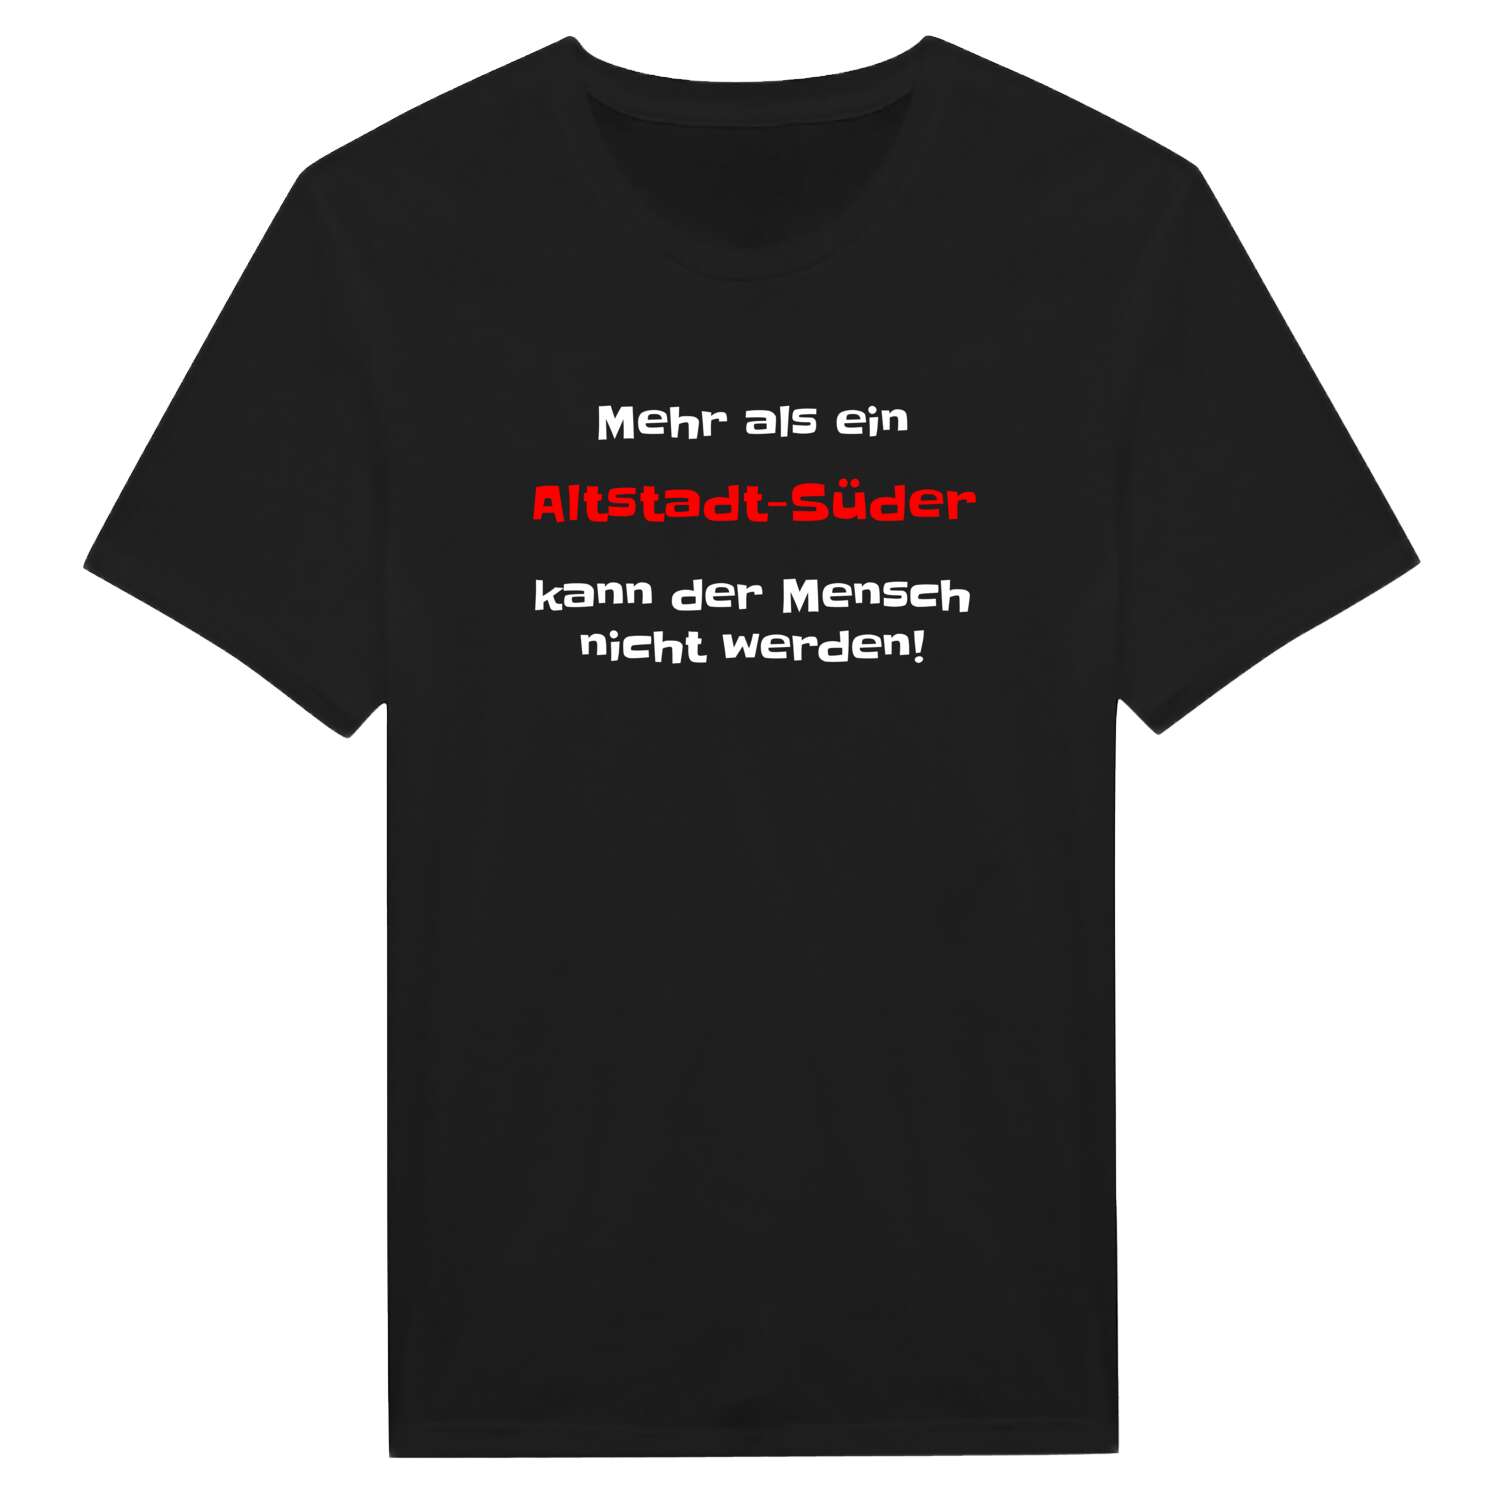 Altstadt-Süd T-Shirt »Mehr als ein«